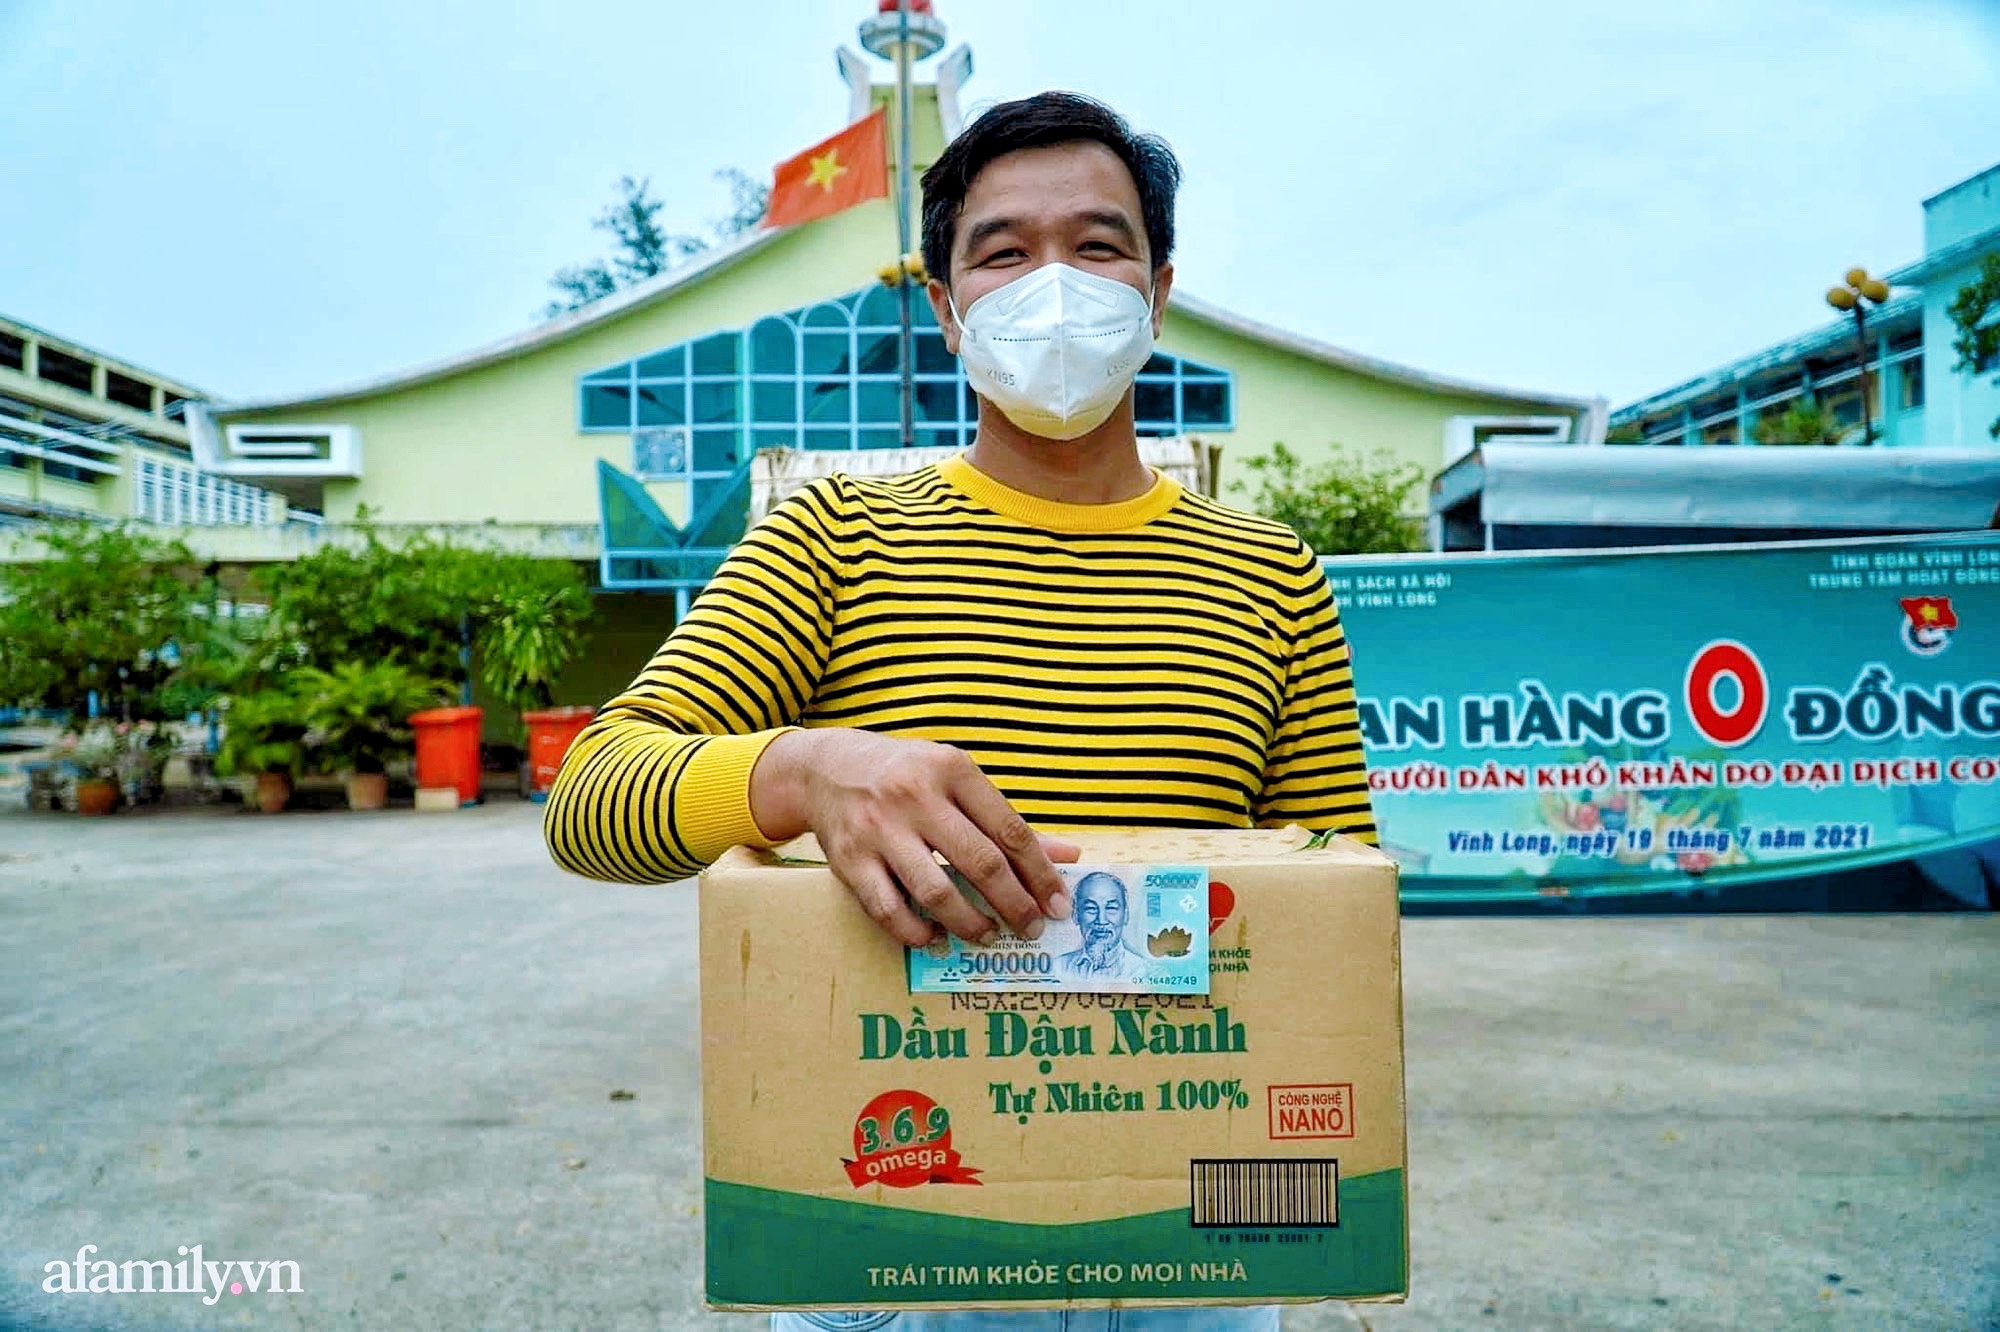 Nhựt Minh - Anh chàng nổi tiếng vì tặng người nghèo những ổ bánh mì đắt nhất Việt Nam, khiến ai mở ra cũng chảy nước mắt vì hạnh phúc trong mùa Covid-4